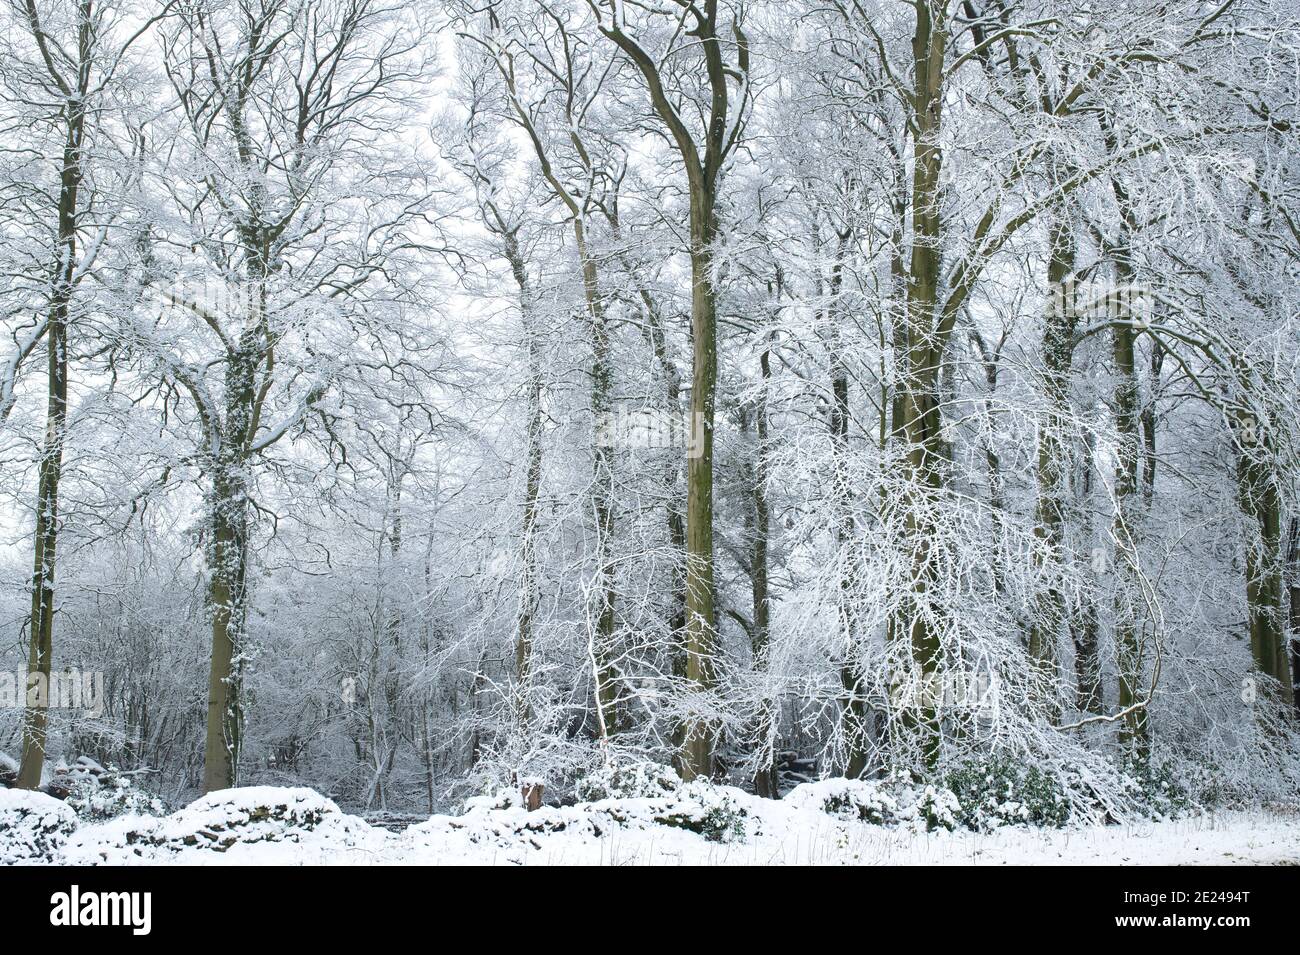 Des arbres enneigés ont été couverts en décembre dans la campagne des cotswolds. Près de Chipping Campden, Cotswolds, Gloucestershire, Angleterre Banque D'Images